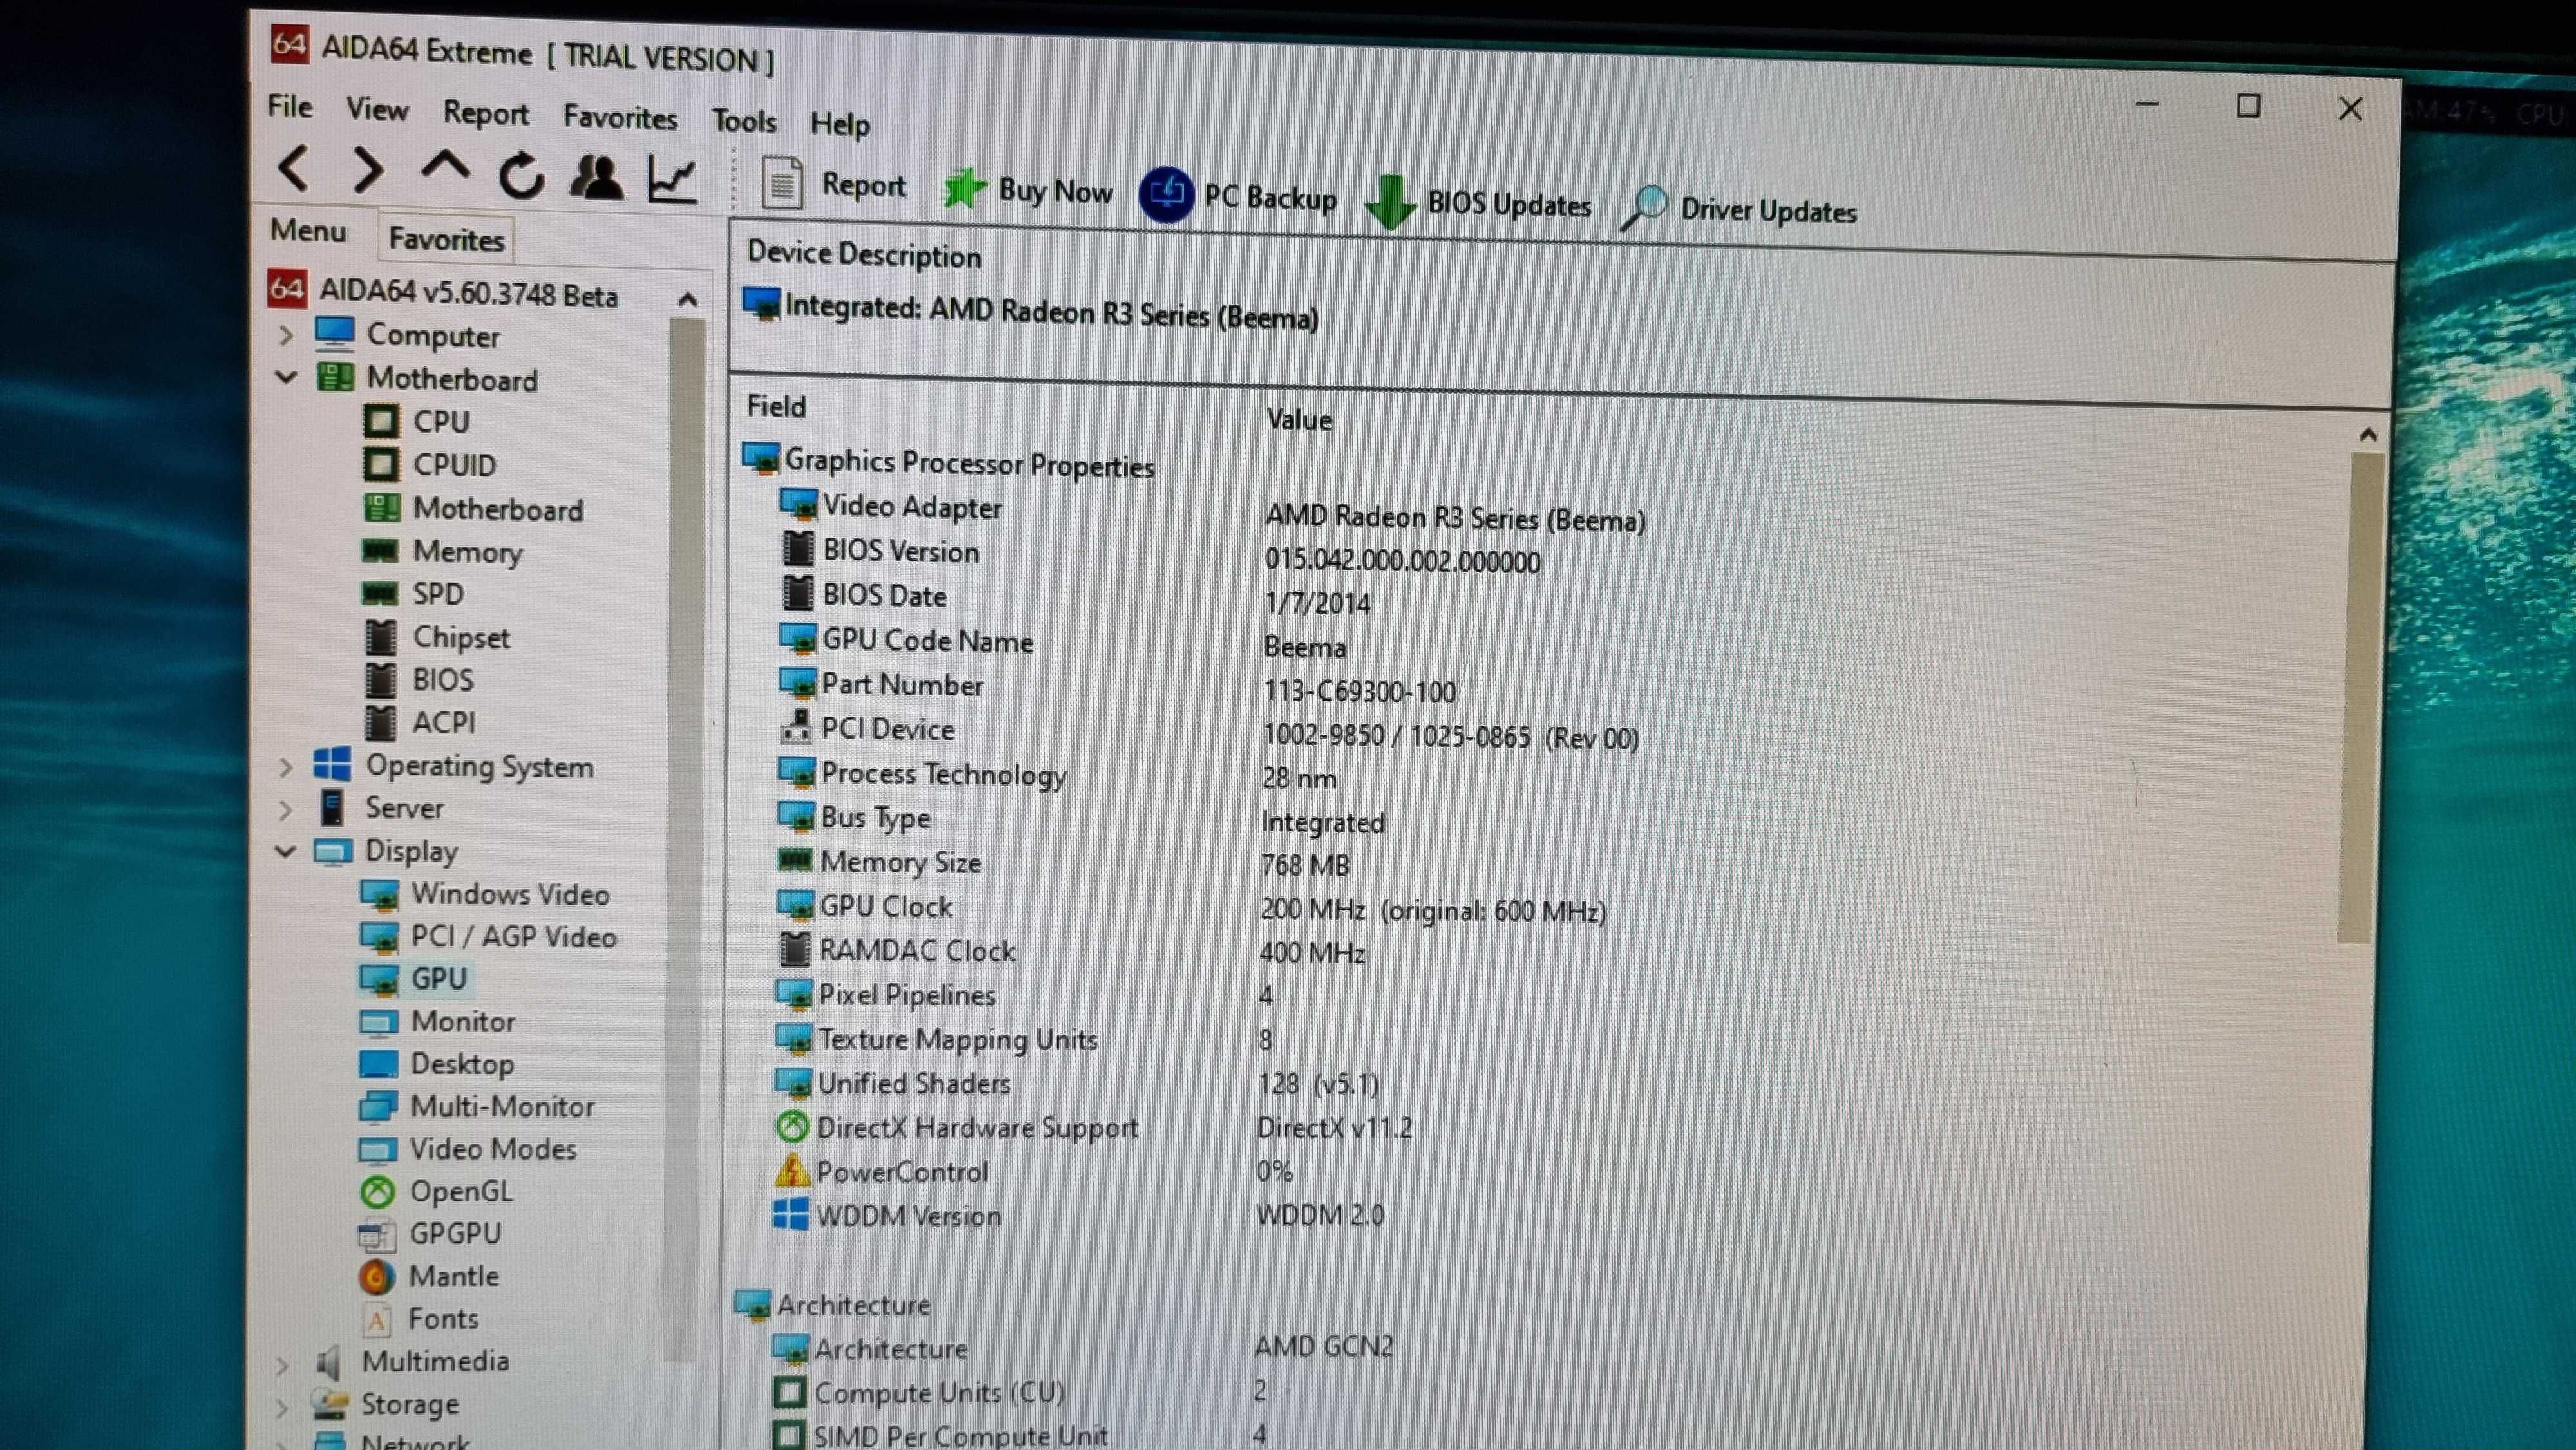 Laptop Acer E5 521-48xg dezmembrez pentru placă bază, etc.